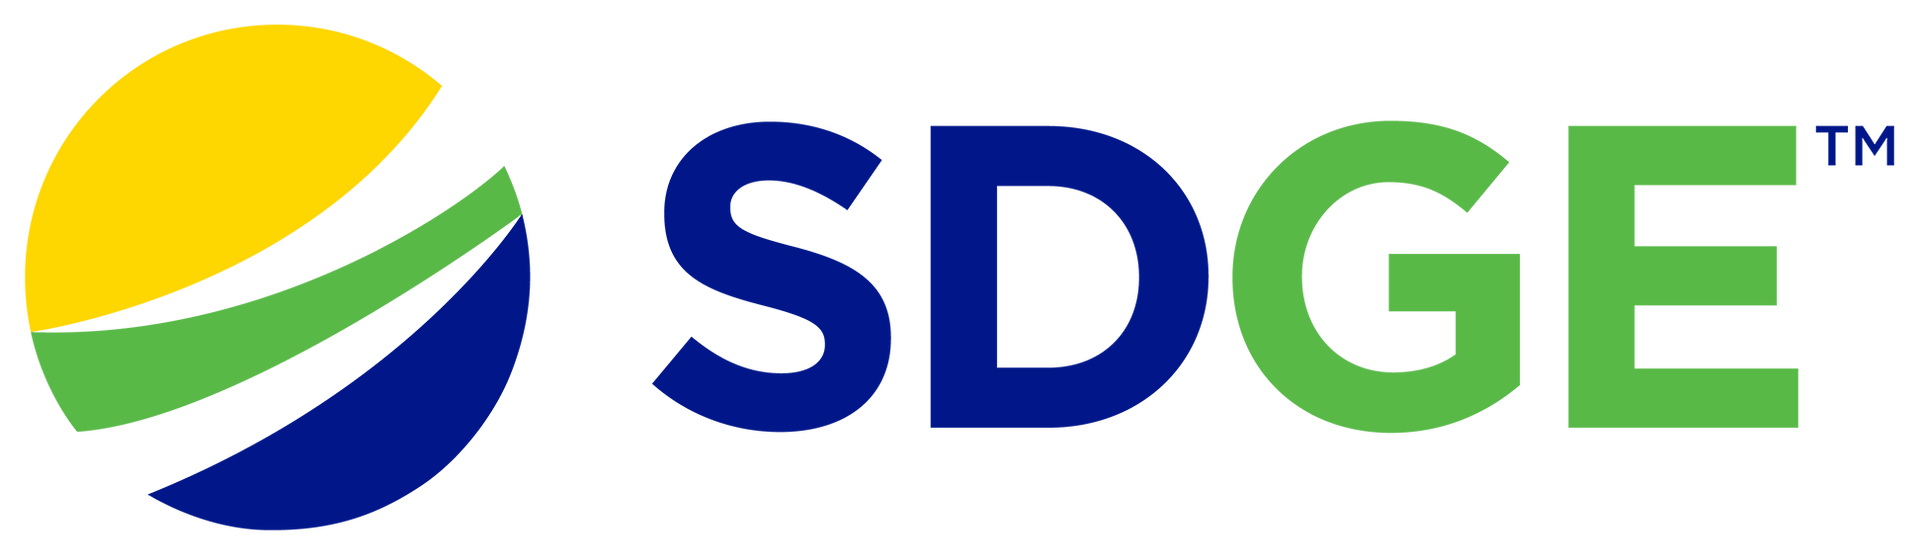 SDGE Logo